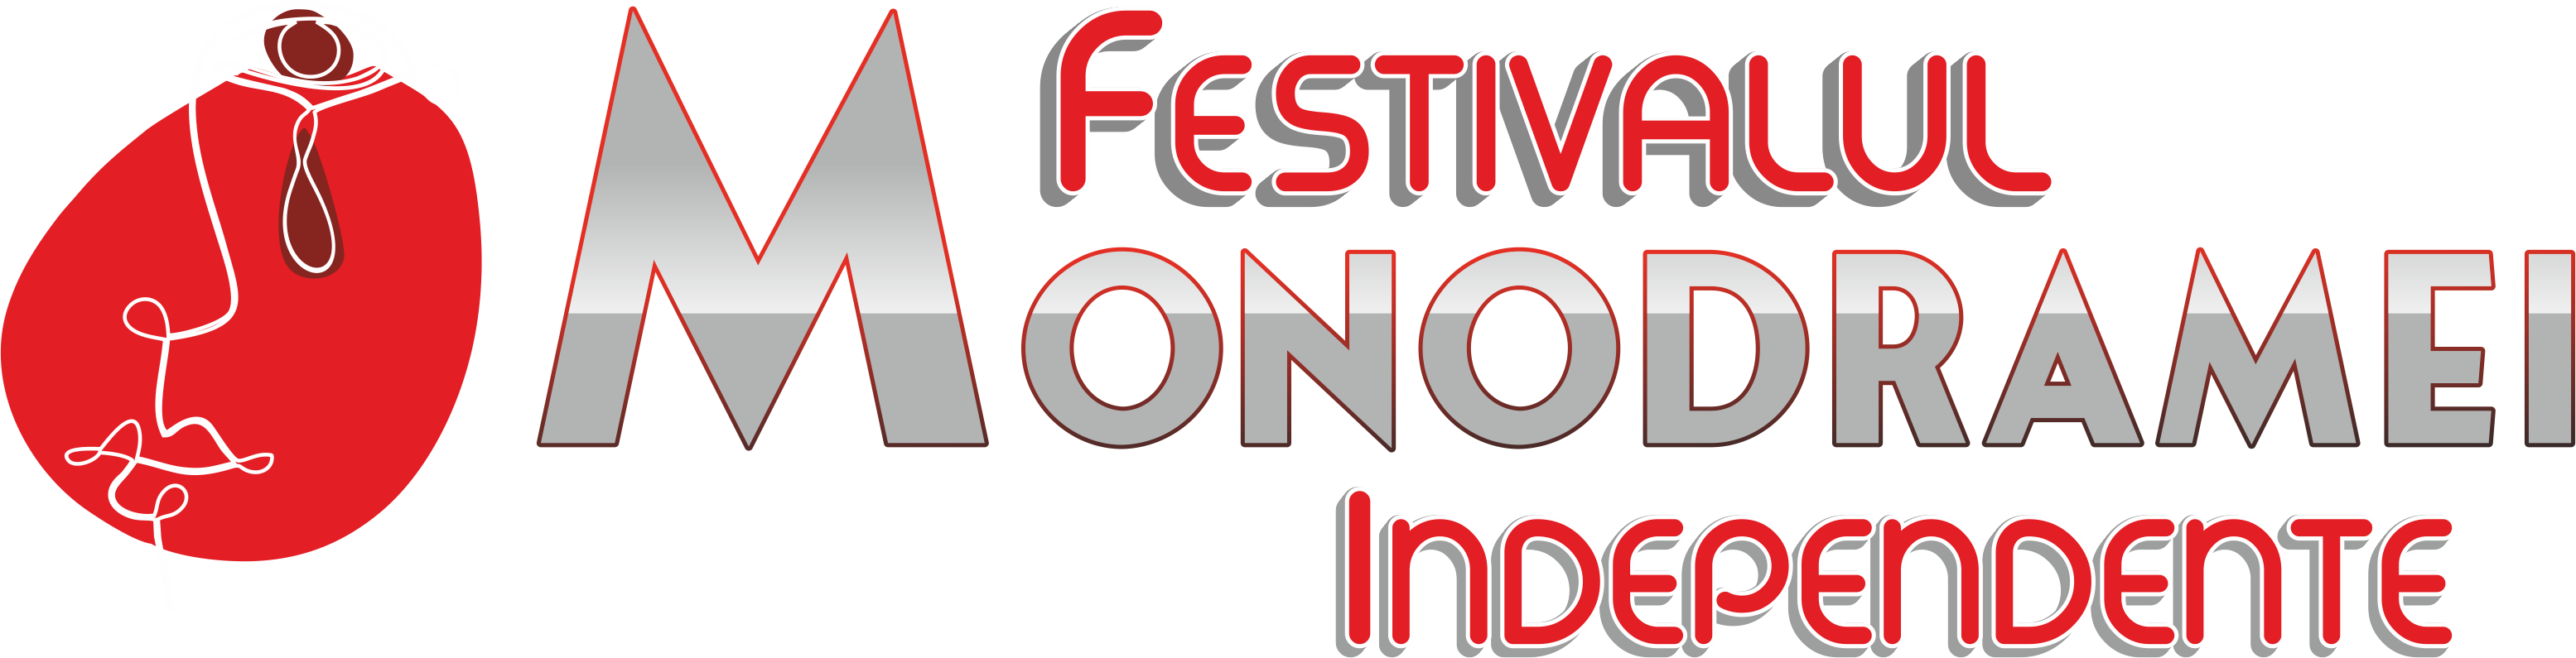 Festivalul Monodramei Independente, ediția a treia